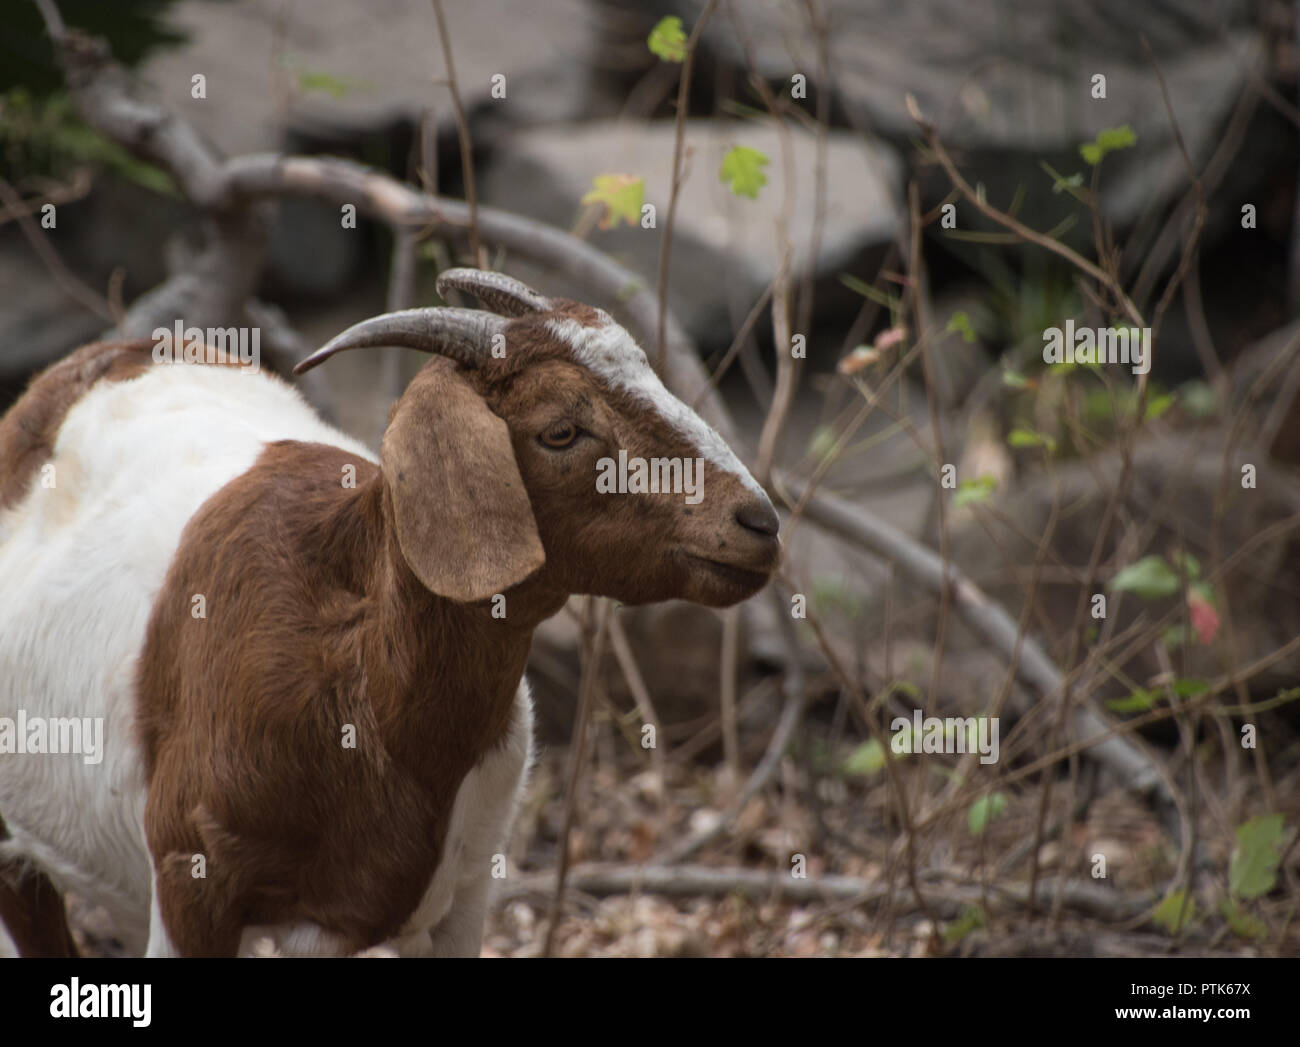 Brown & white goat deciding what to eat next Stock Photo